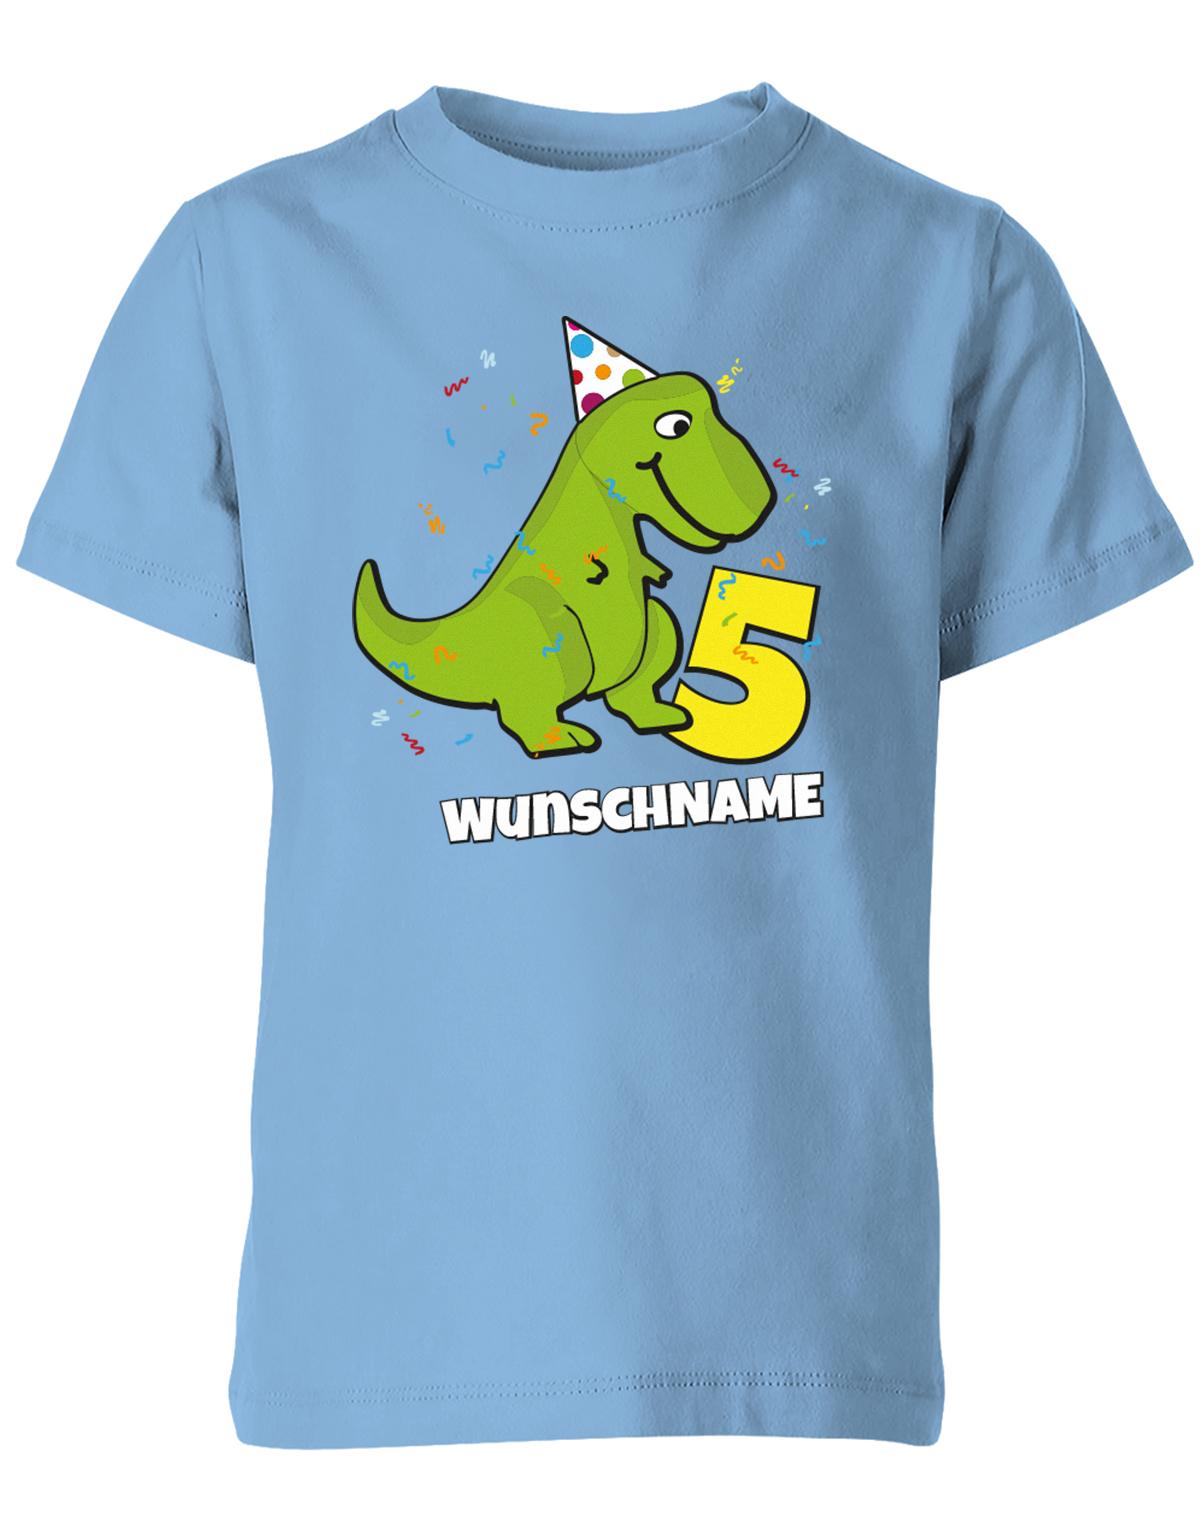 ich-bin-5-Dinosaurier-t-rex-wunschname-geburtstag-kinder-shirt-hellblau